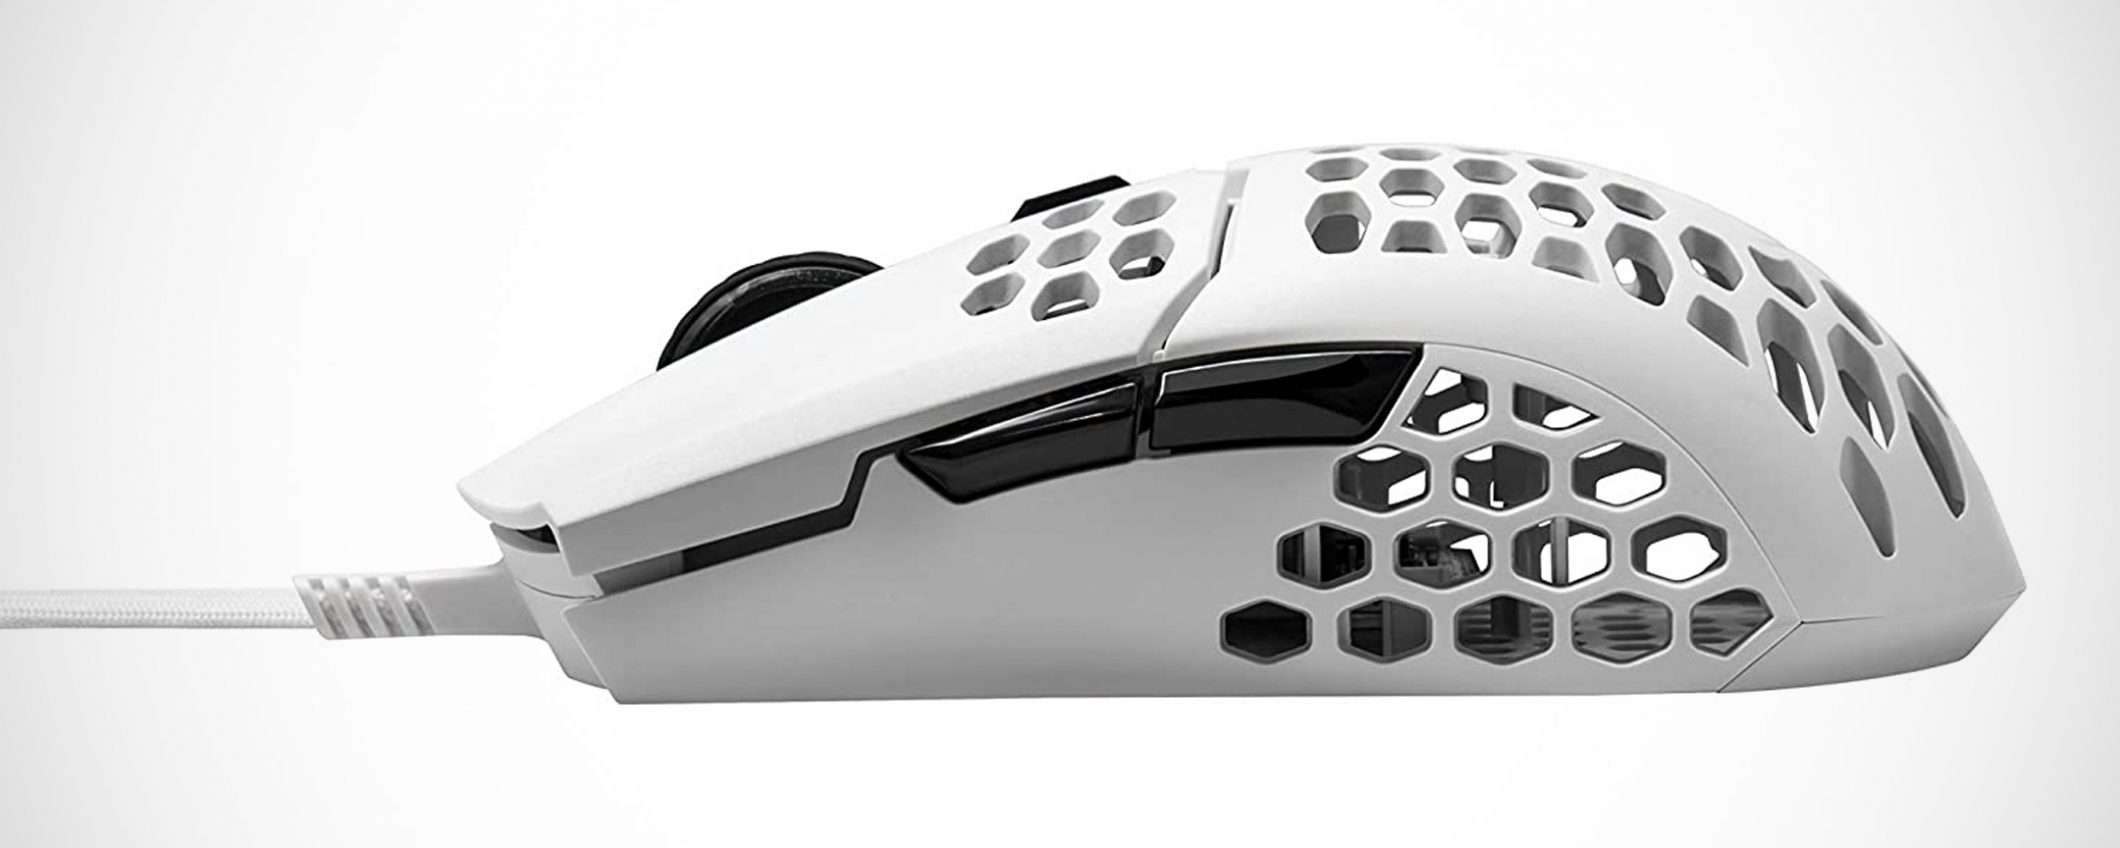 Cooler Master MM710: il mouse scelto dai professionisti in offerta